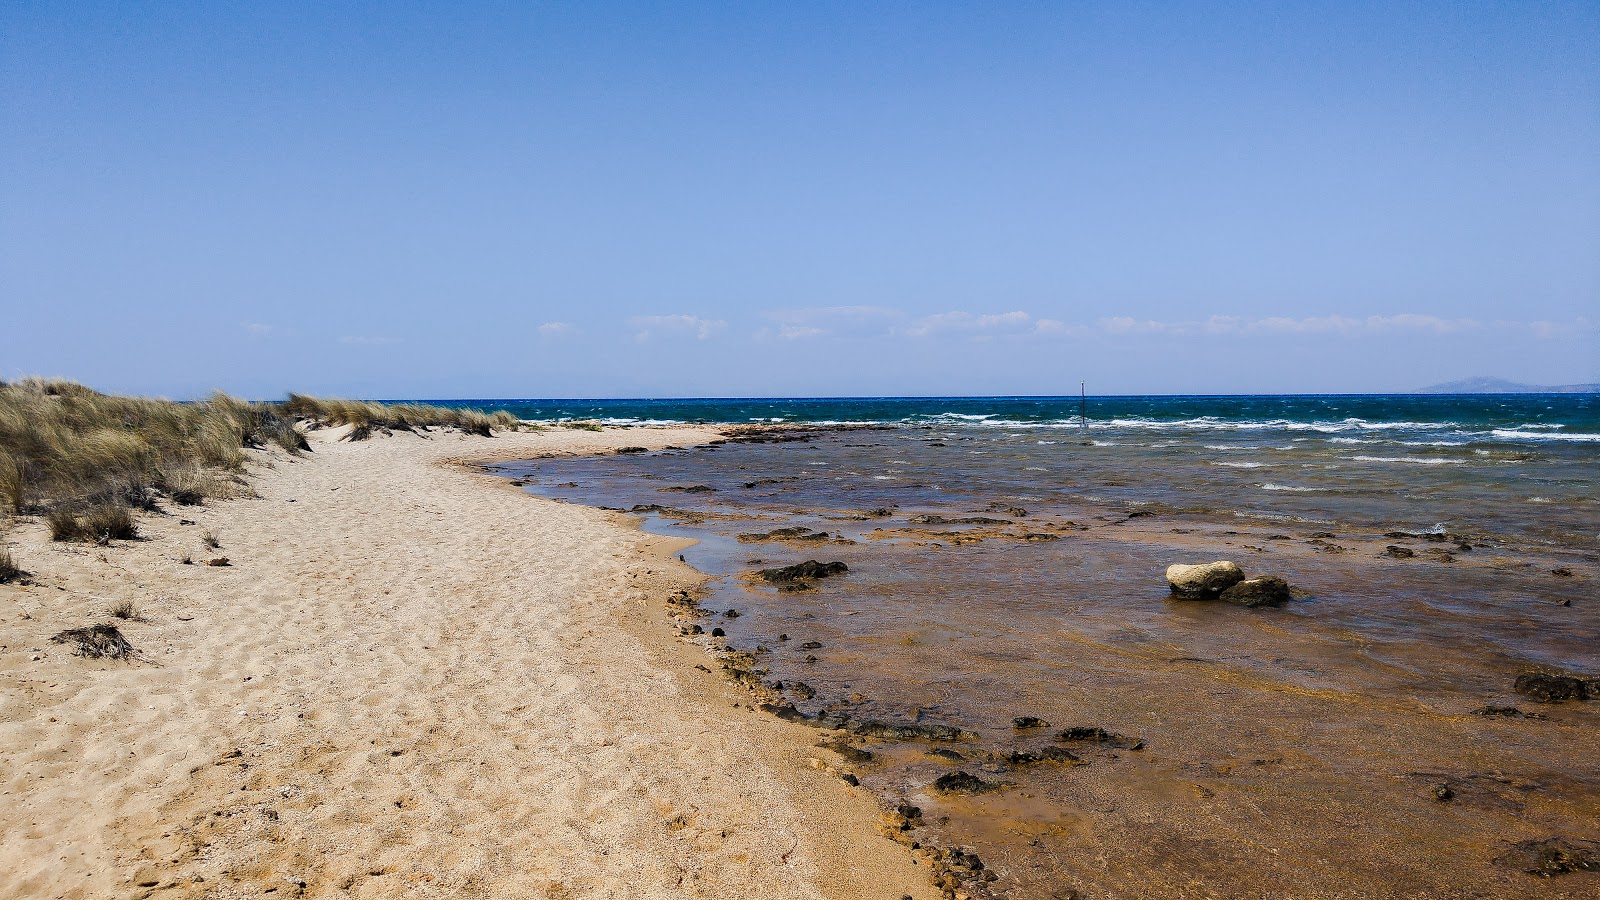 Fotografie cu Kalogeras beach cu o suprafață de nisip strălucitor și pietre